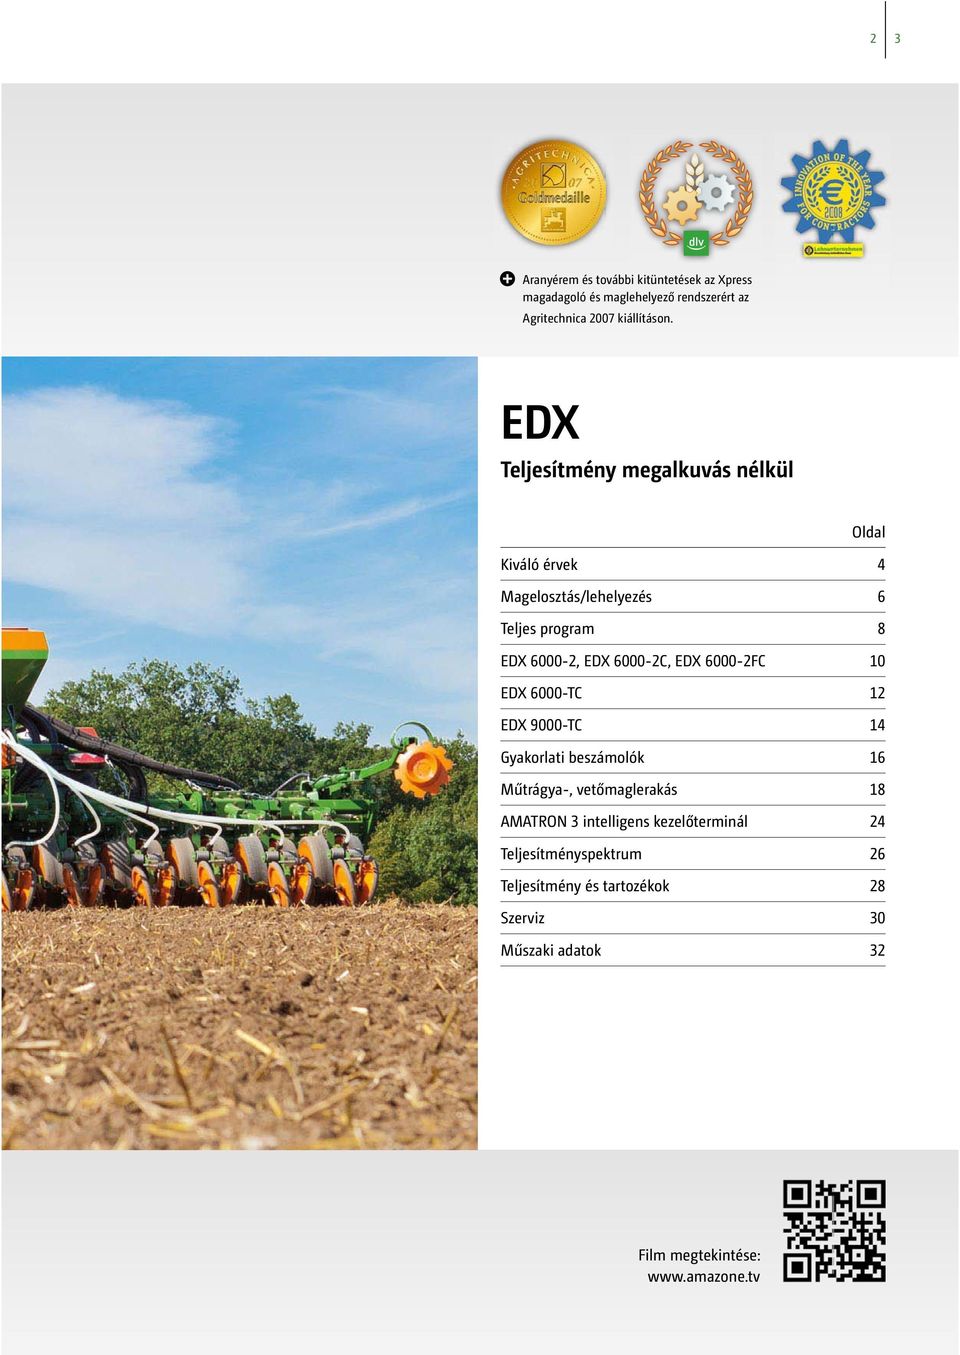 EDX 6000-2FC 10 EDX 6000-TC 12 EDX 9000-TC 14 Gyakorlati beszámolók 16 Műtrágya-, vetőmaglerakás 18 AMATRON 3 intelligens